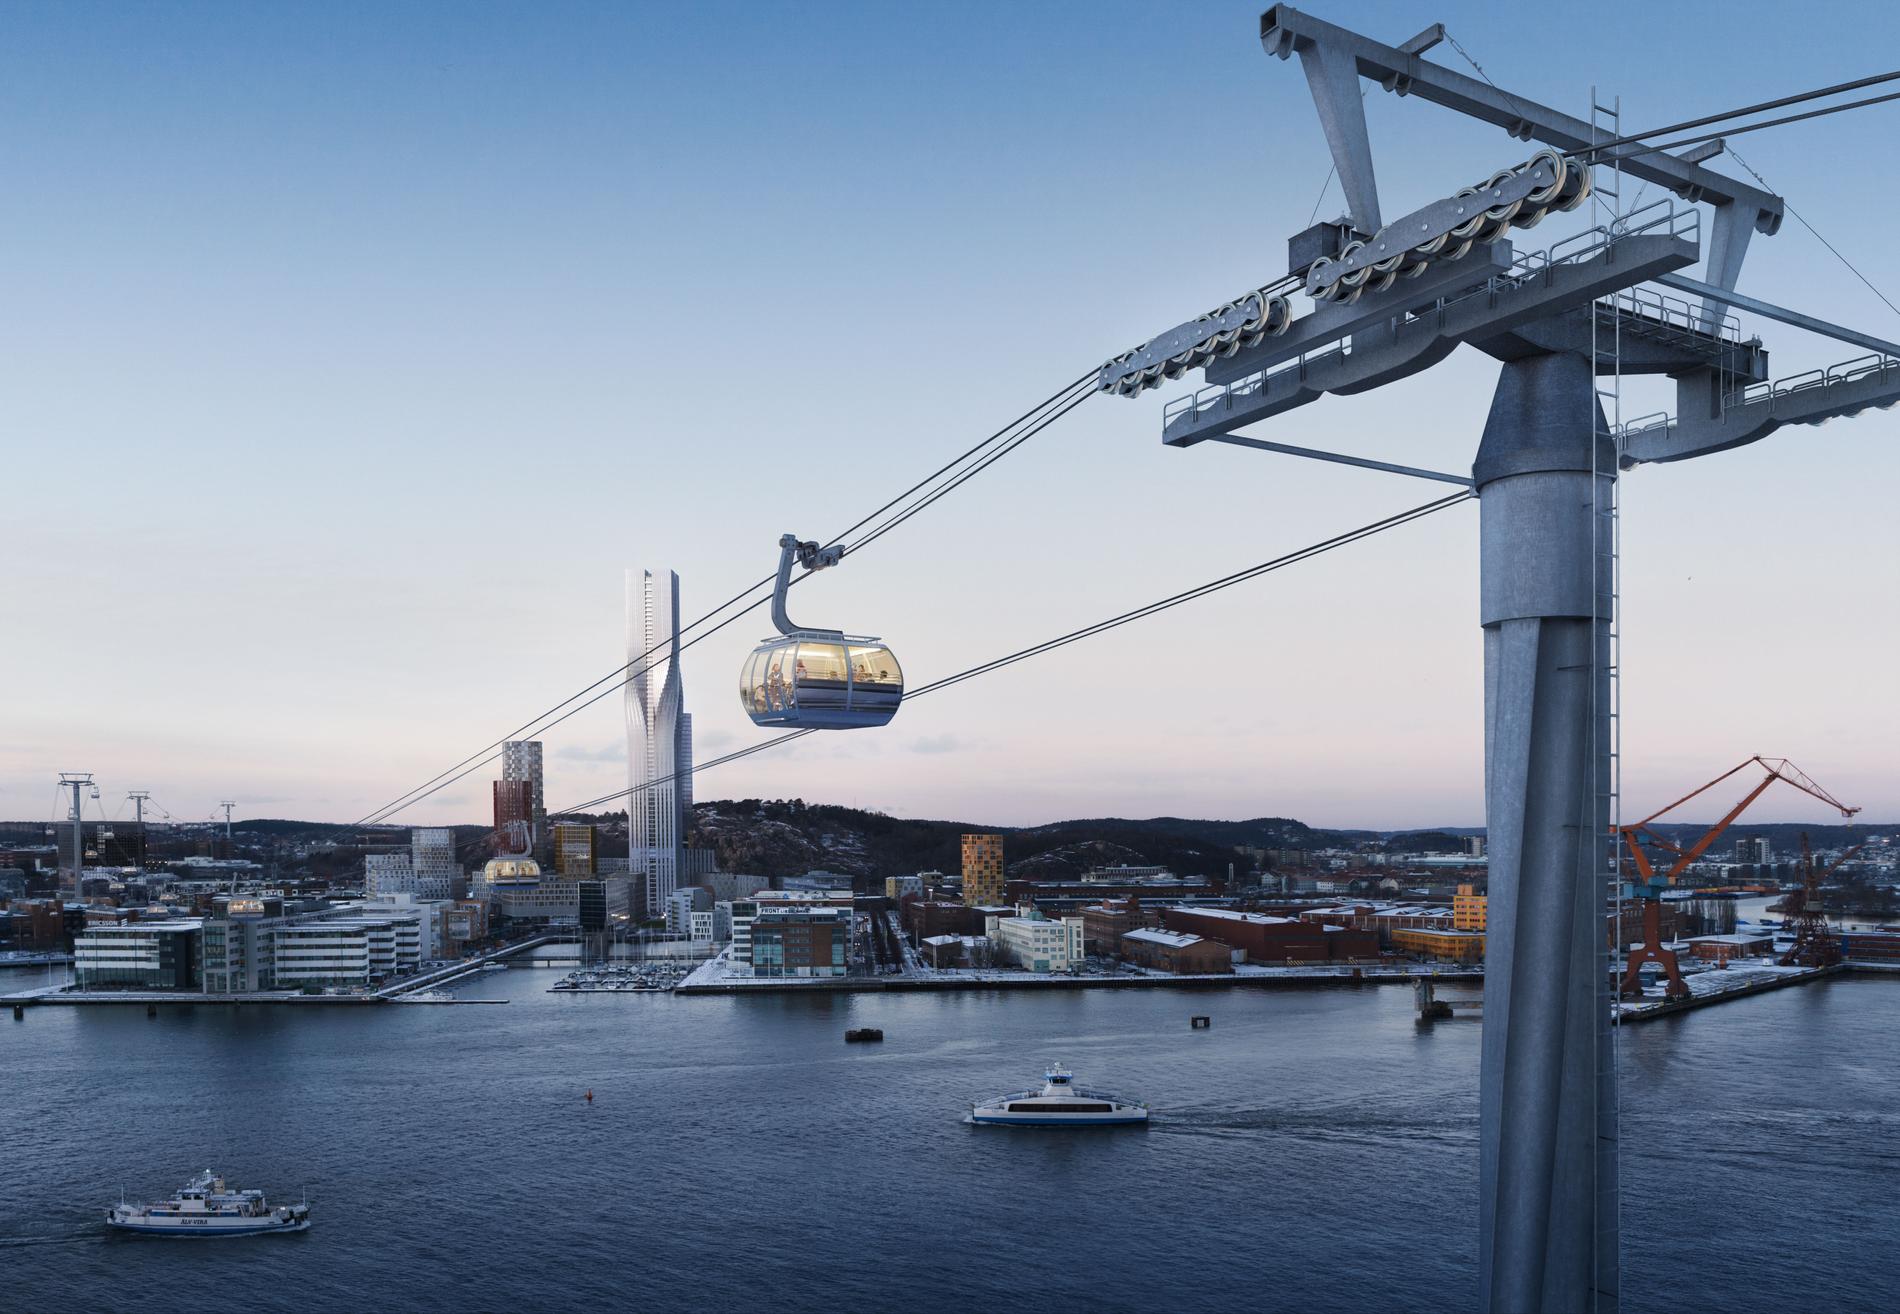 Till Göteborg 400-årsjubileum 2021 planeras det för en linbana mellan Järntorget och Wieselgrensplatsen.